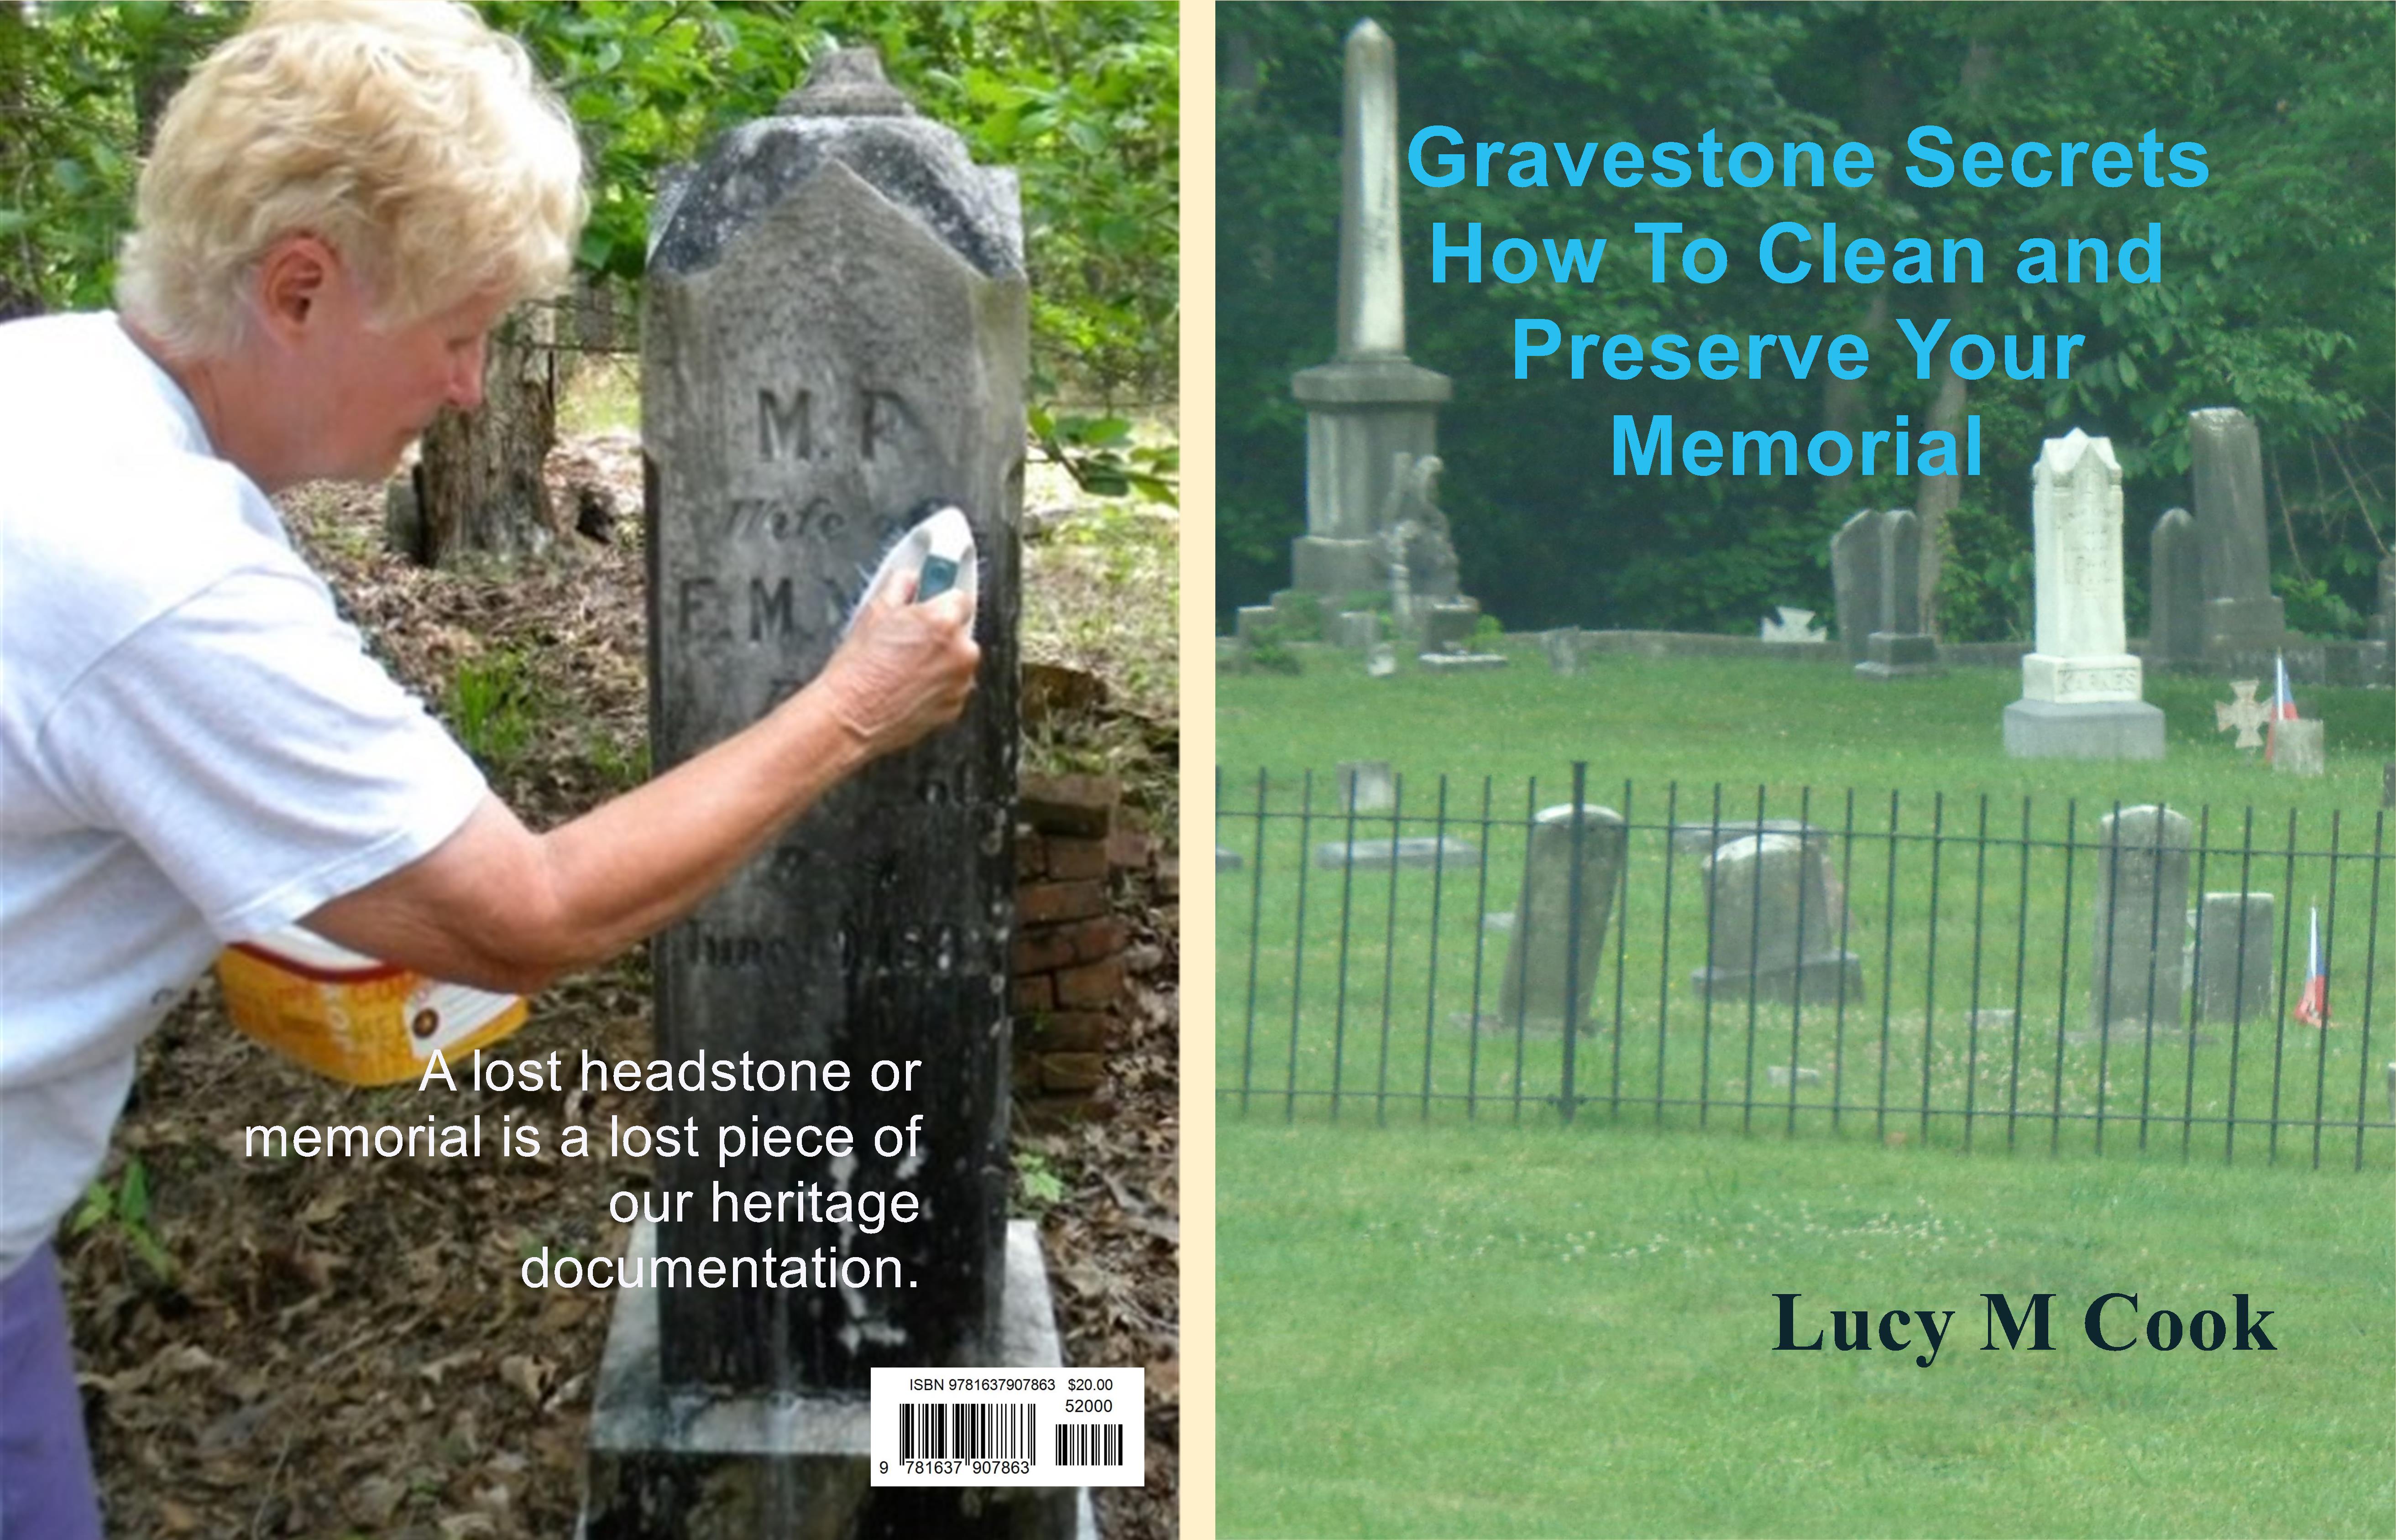 Gravestone Secrets cover image